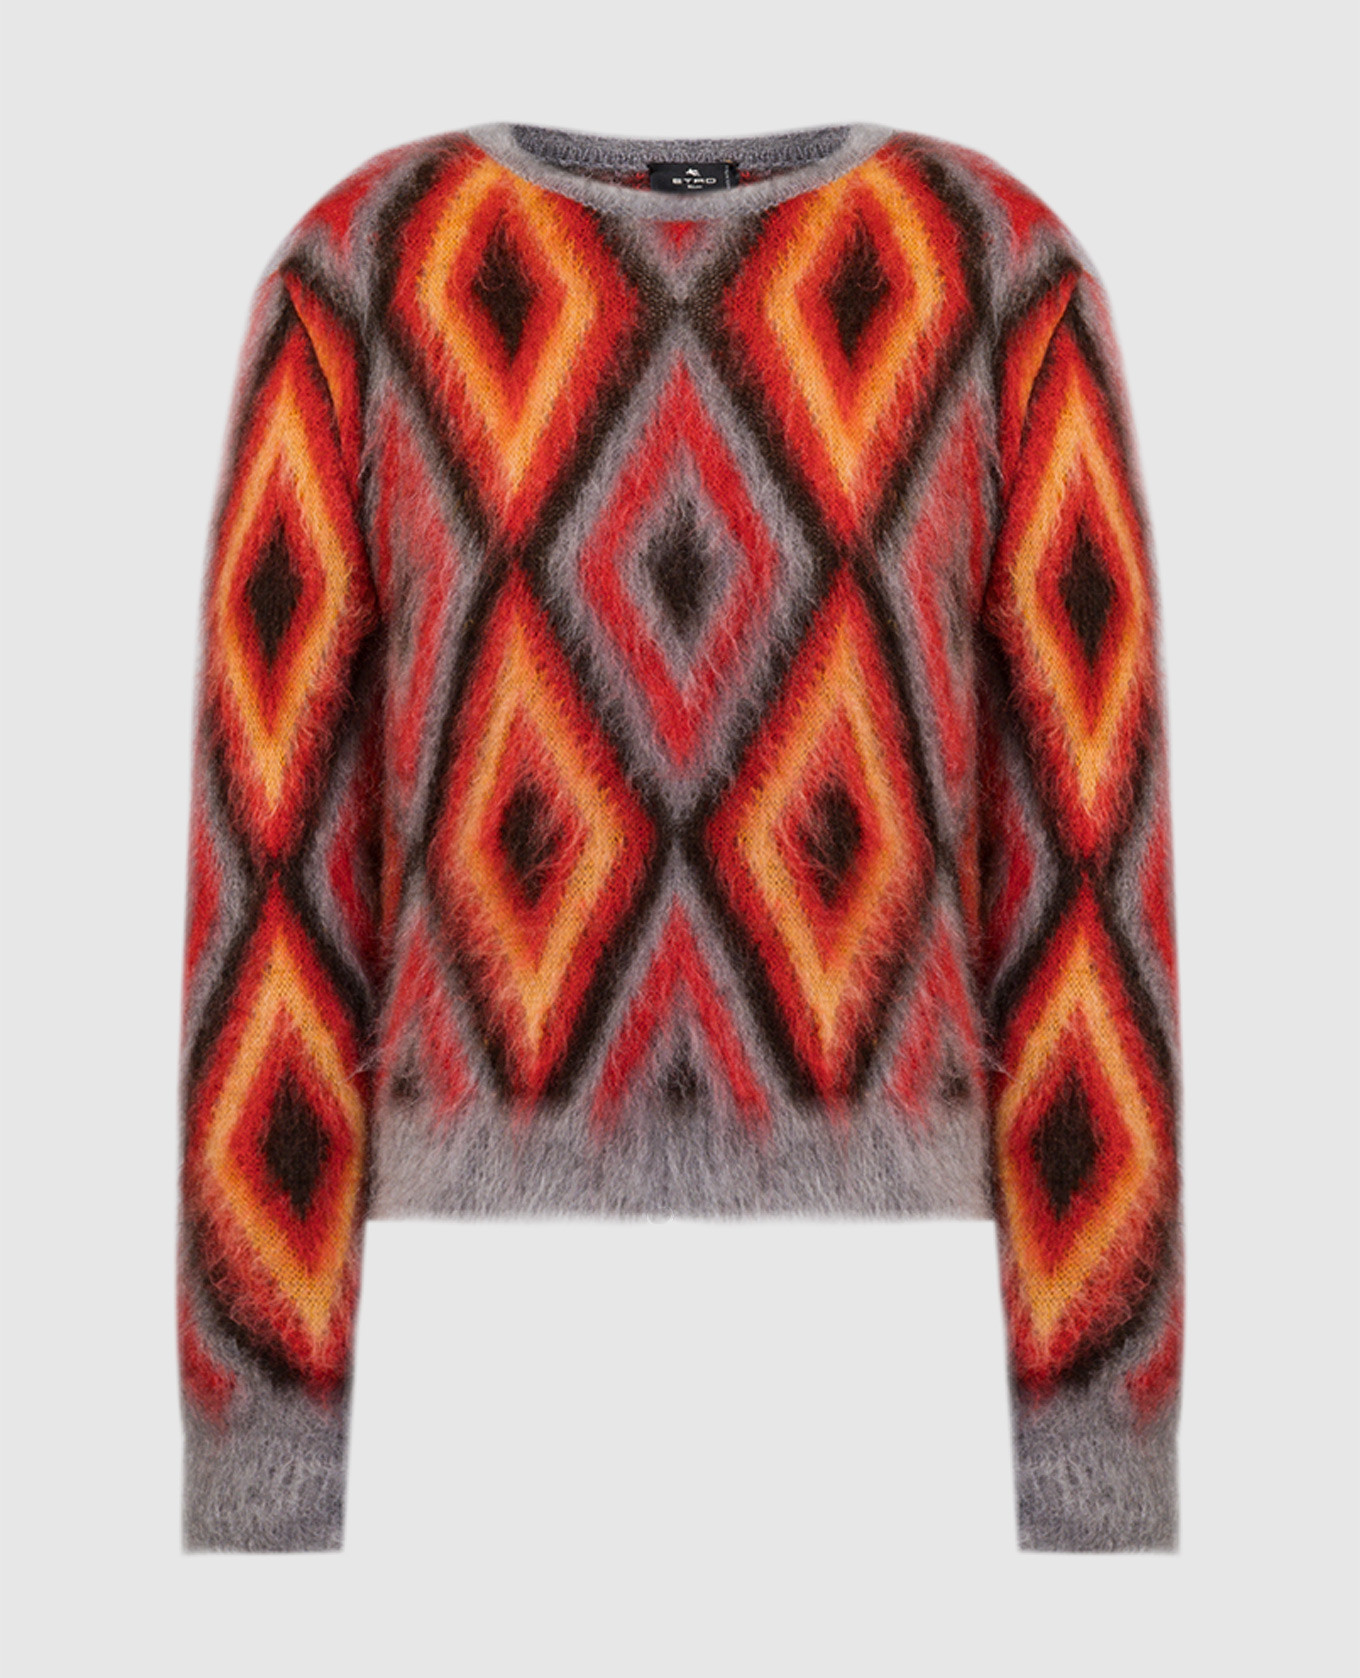 Красный свитер в геометрический узор.